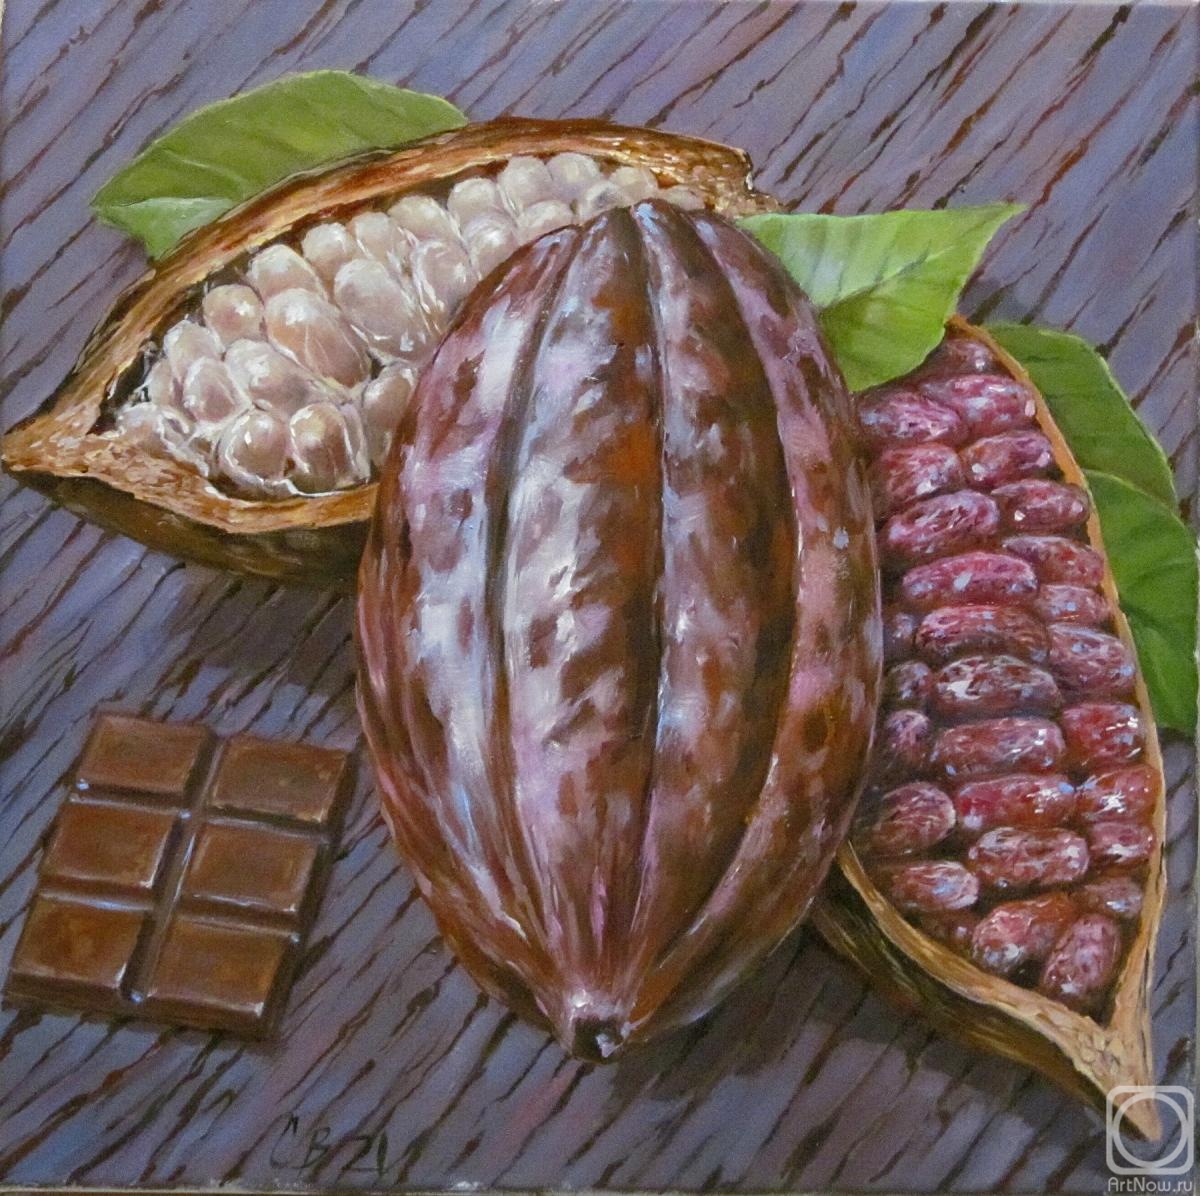 Mishchenko-Sapsay Svetlana. Chocolate